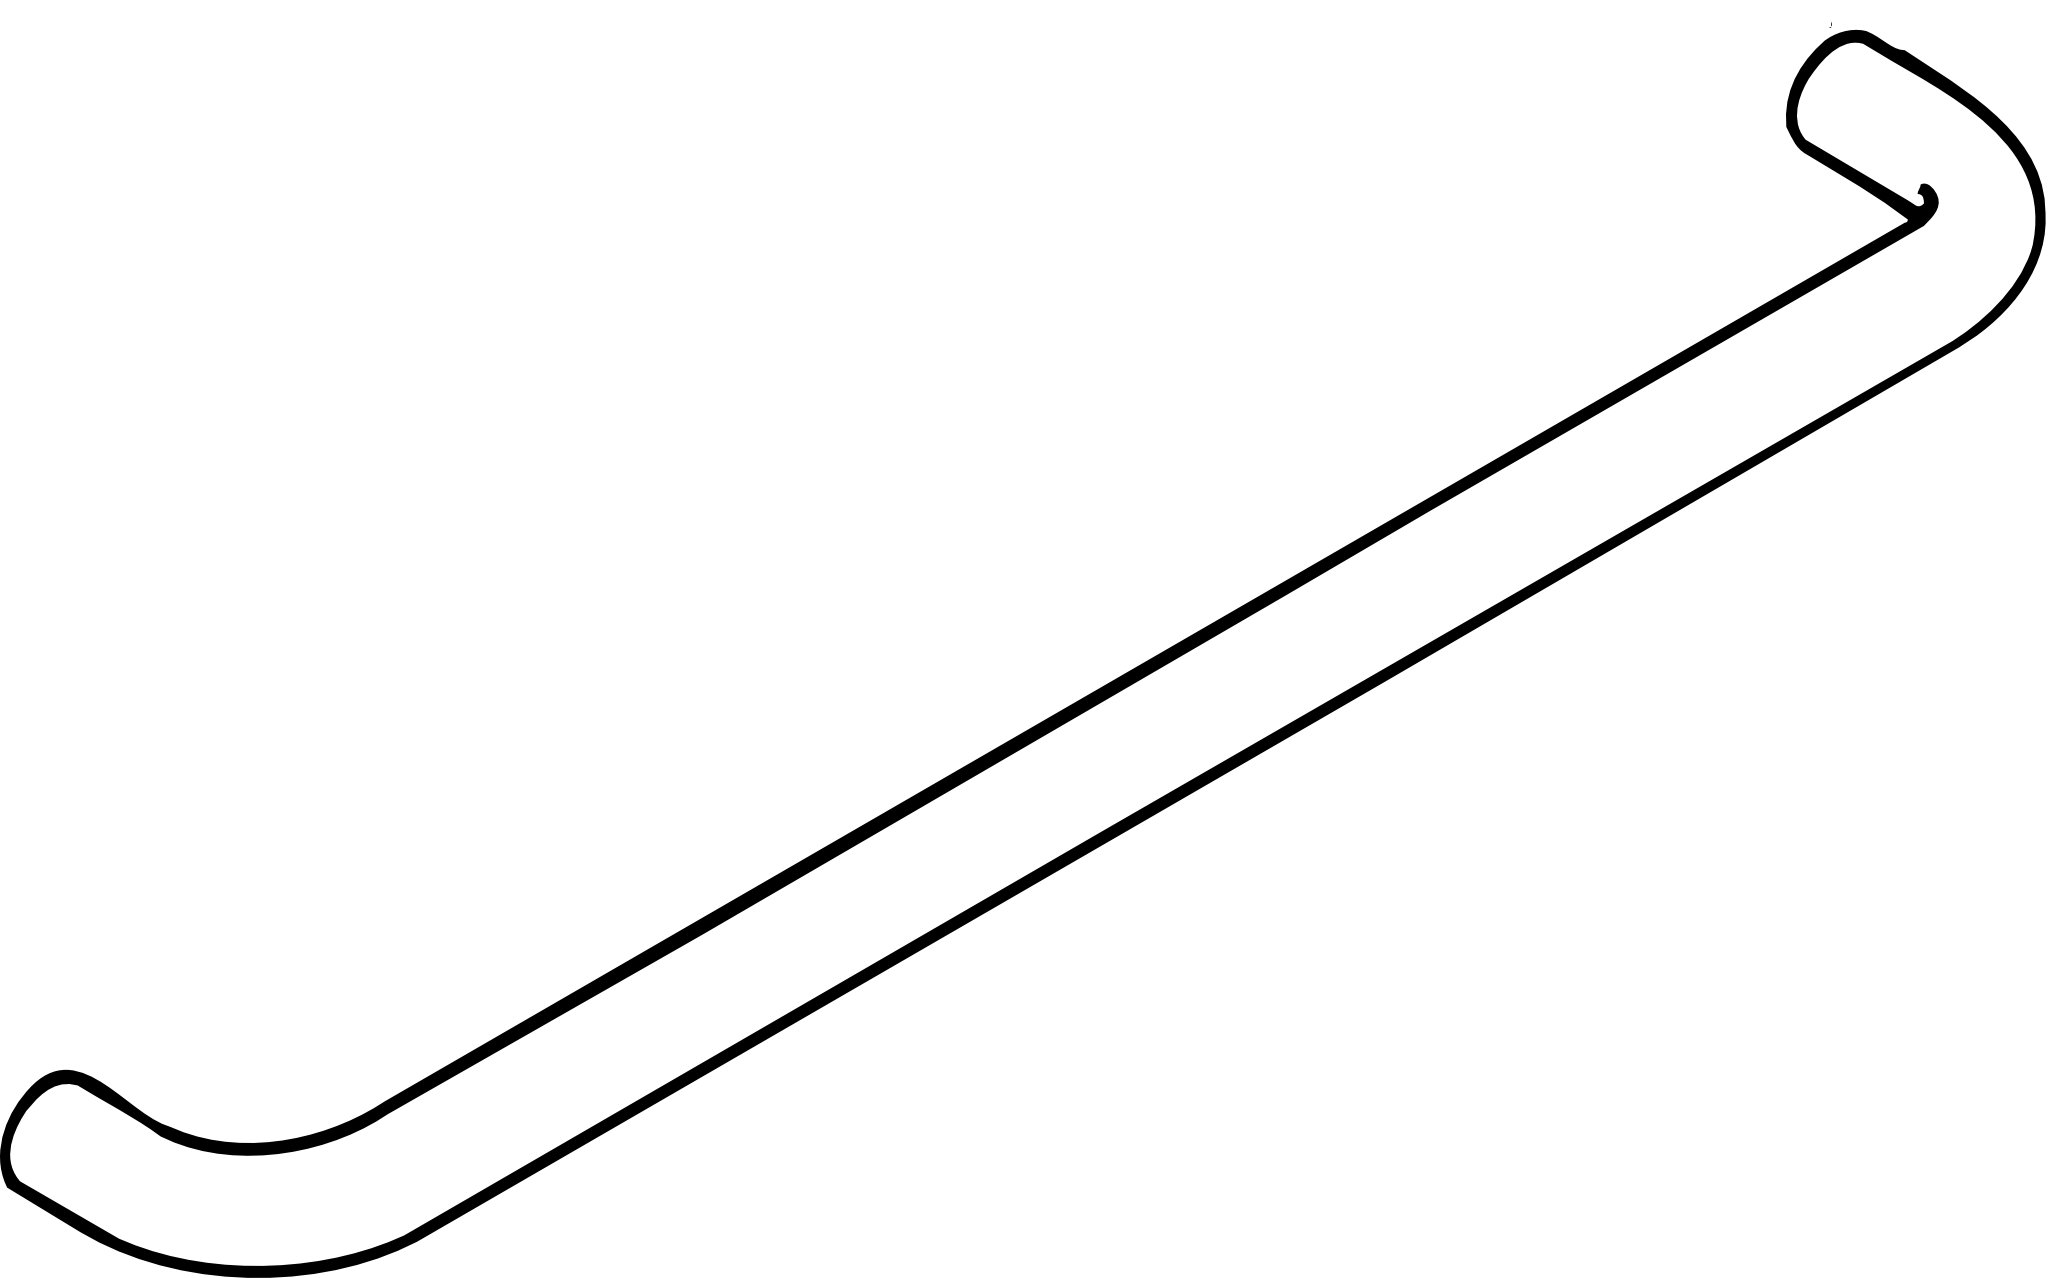 HEWI Handtuchhalter „Serie 477“ 59,8 cm